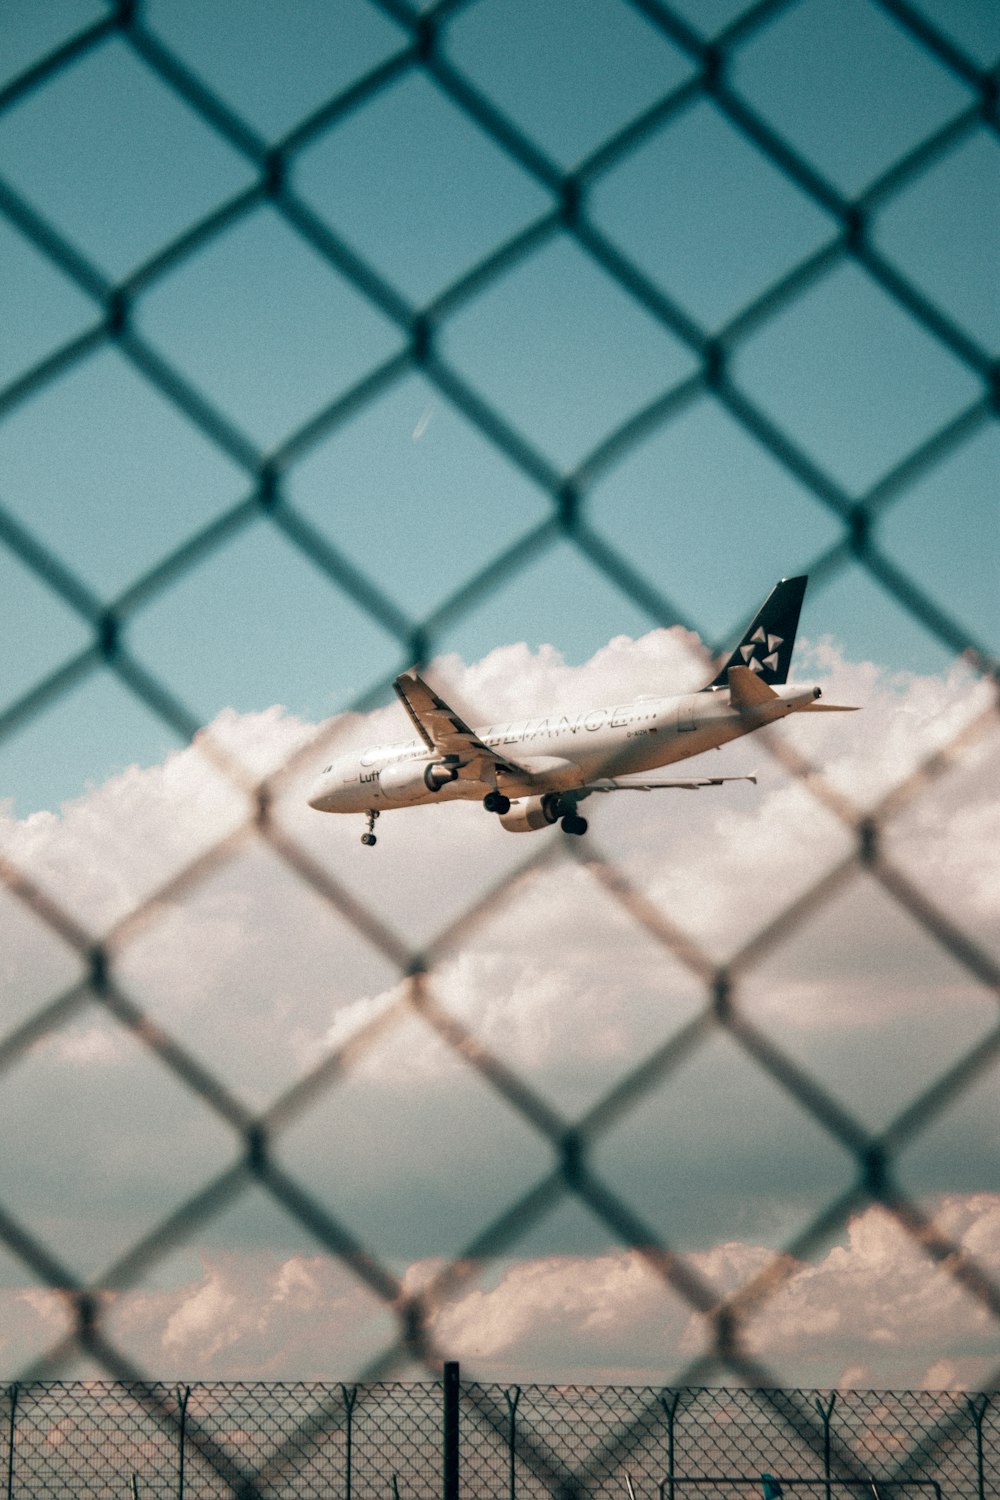 Un avion vole dans le ciel derrière une clôture à mailles de chaîne